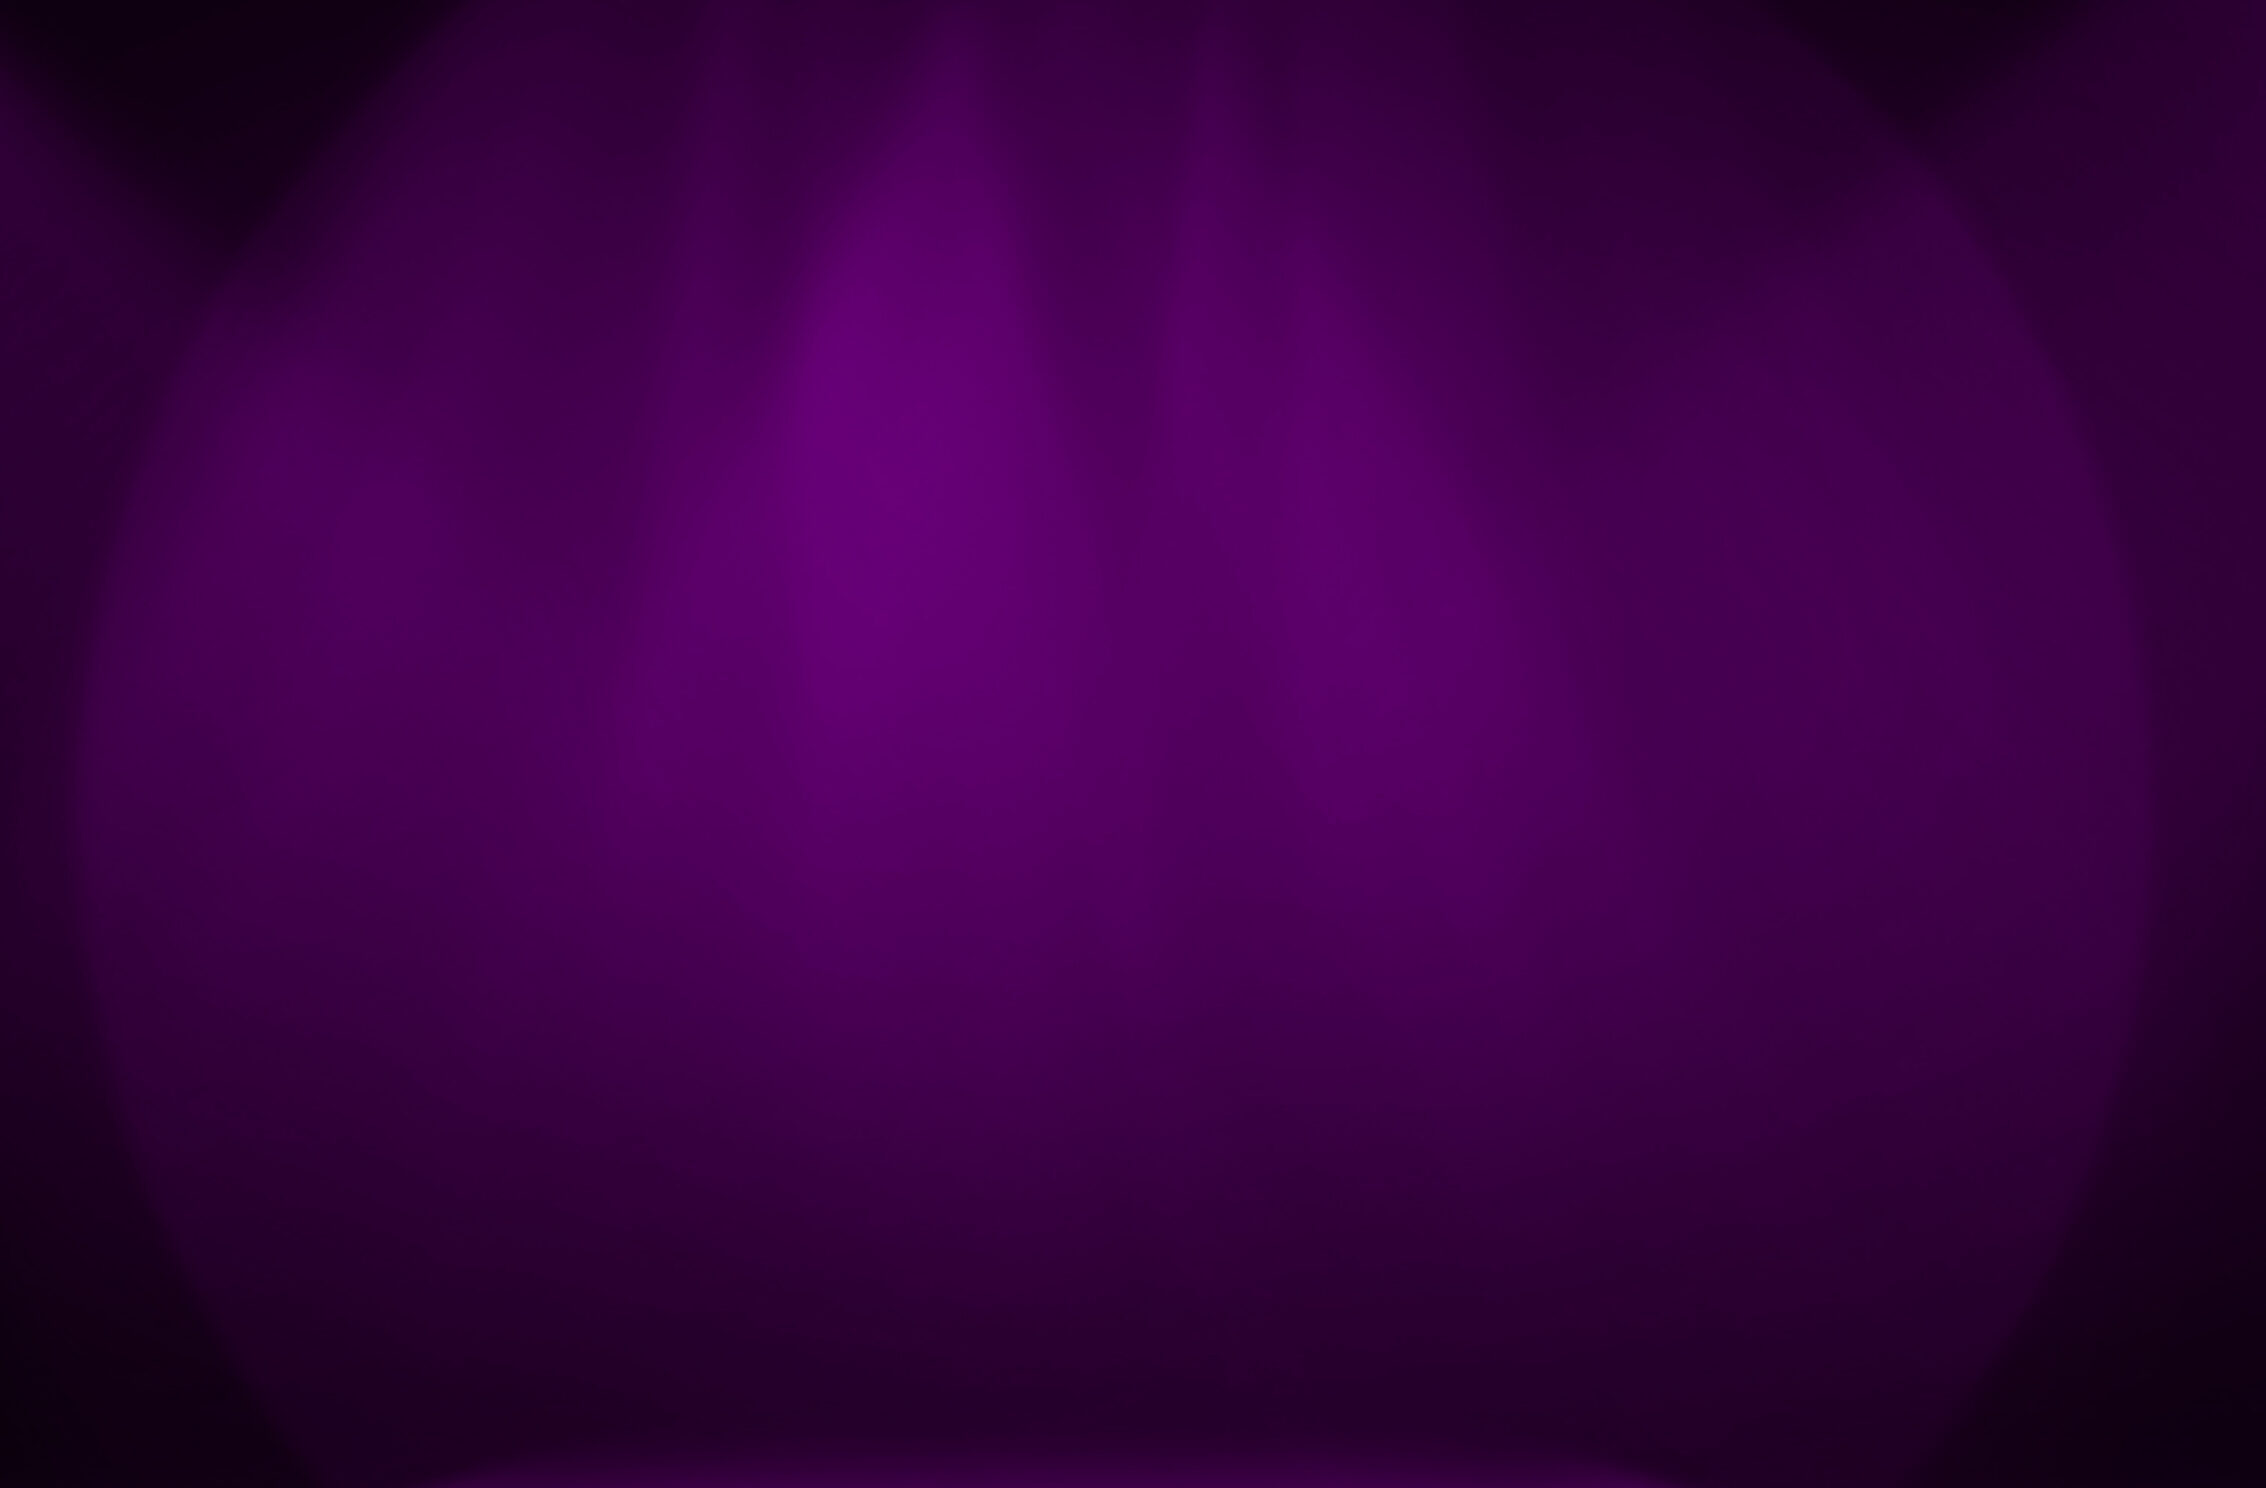 2266x1488 iPad Mini wallpapers Purple Stage Decoration iPad Wallpaper 2266x1488 pixels resolution